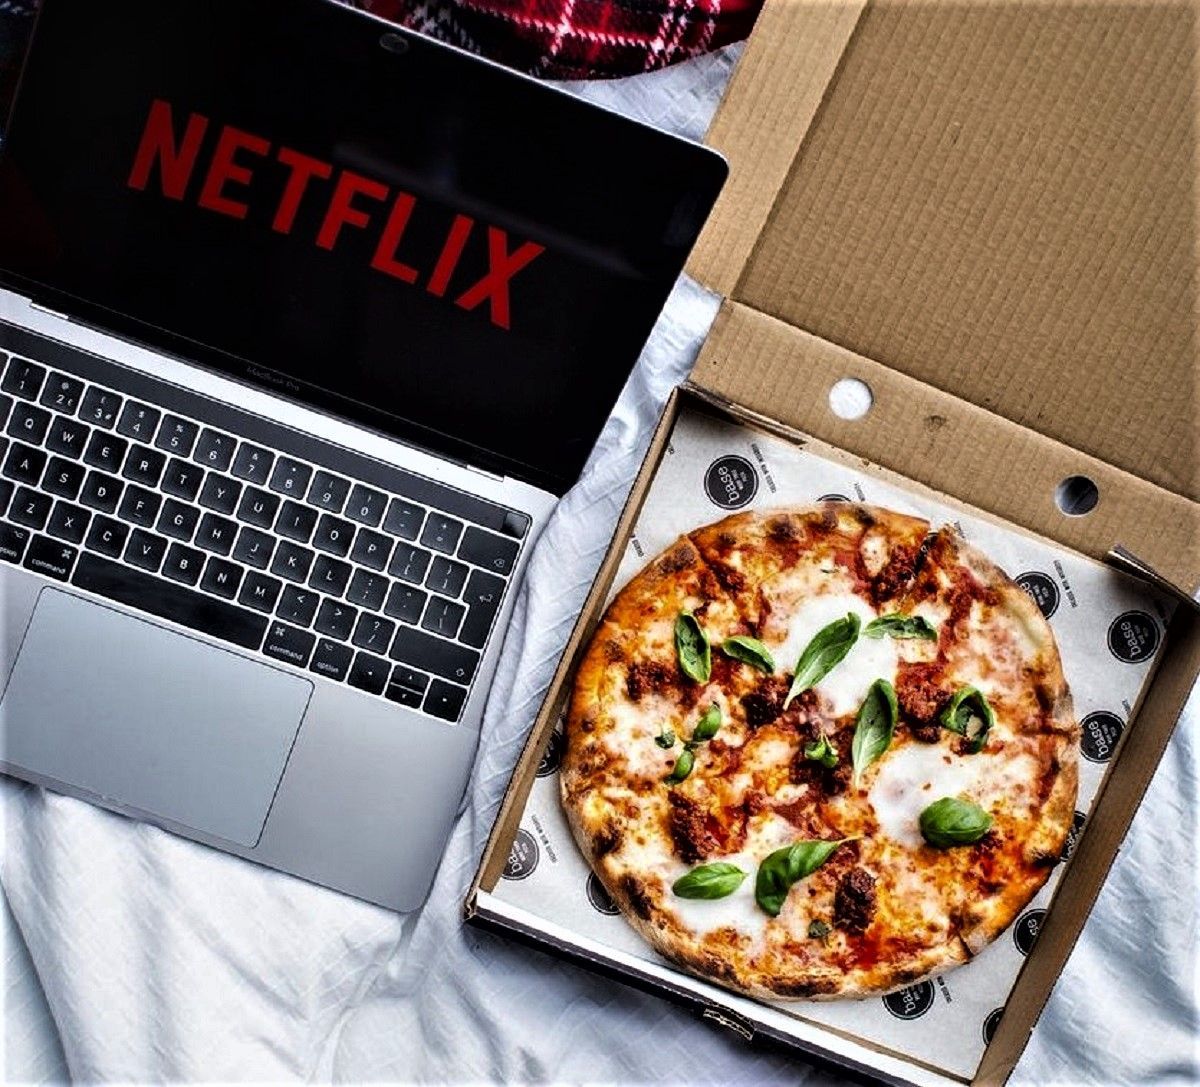 Дивитися Netflix, їсти піцу і заробляти: вакансія мрії для професійного серіаломана – деталі